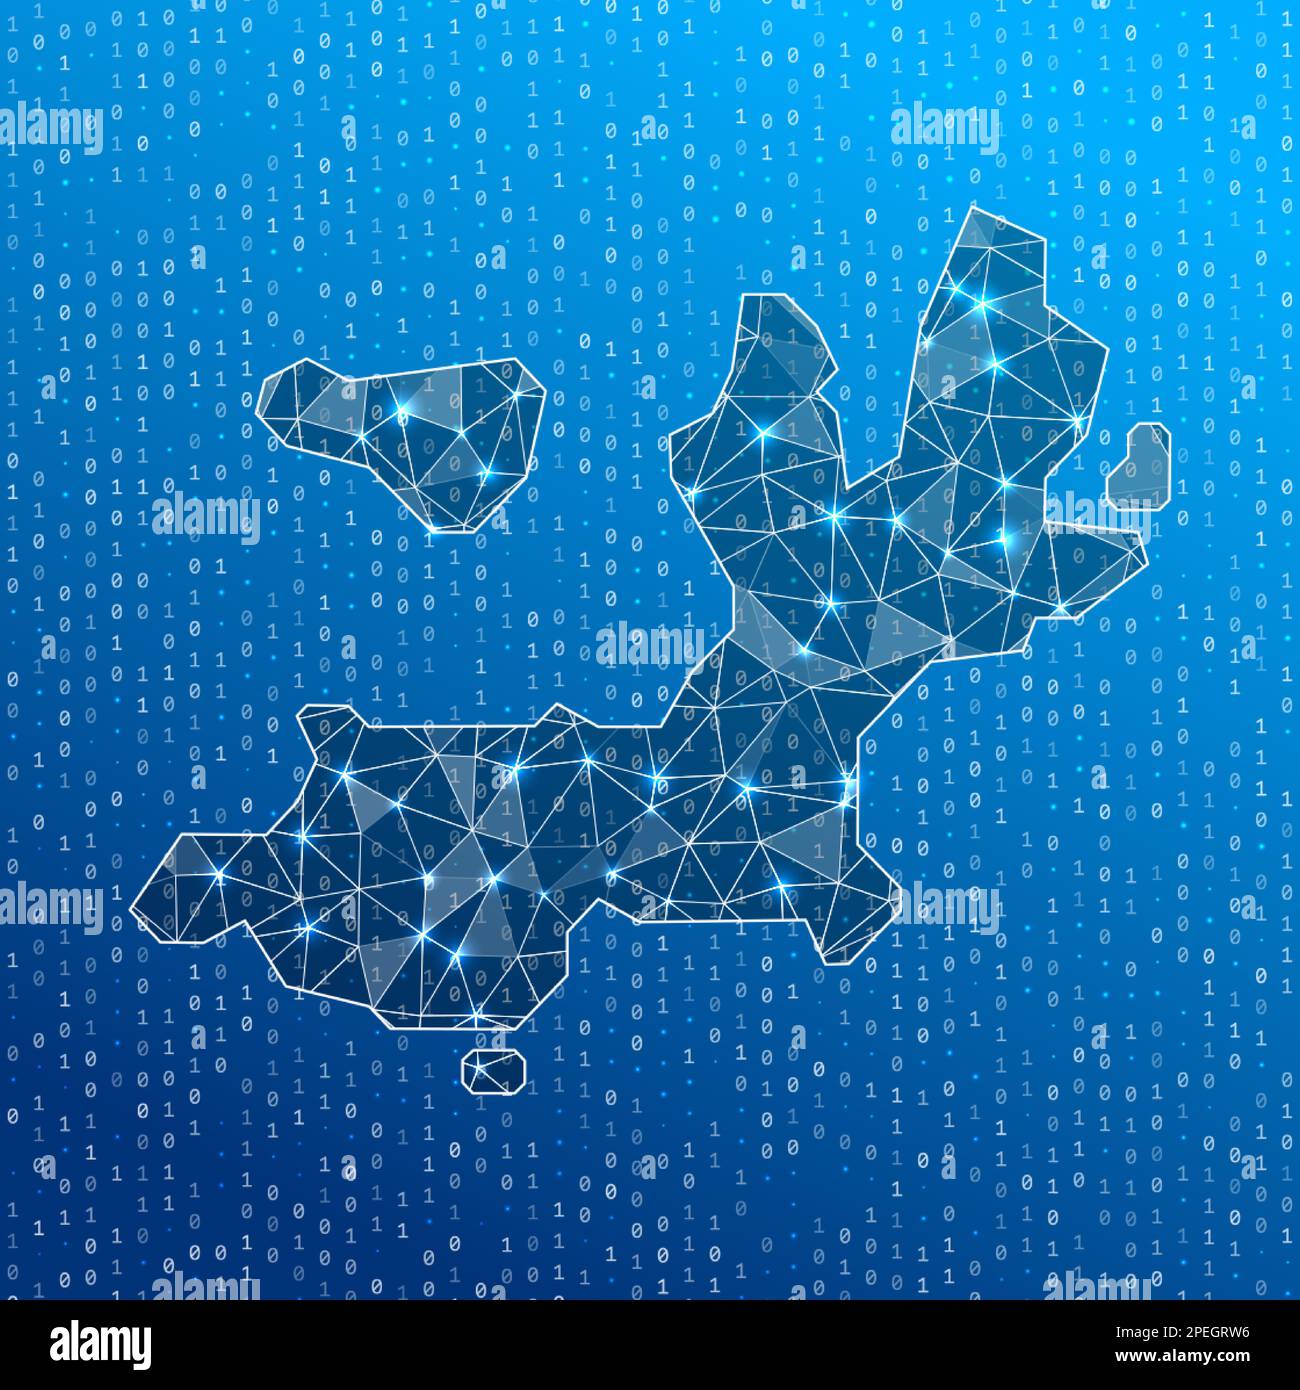 Carte réseau de l'île de Terre-de-Haut. Carte des connexions numériques de l'île. Technologie, Internet, réseau, concept de télécommunication. Illustration vectorielle. Illustration de Vecteur